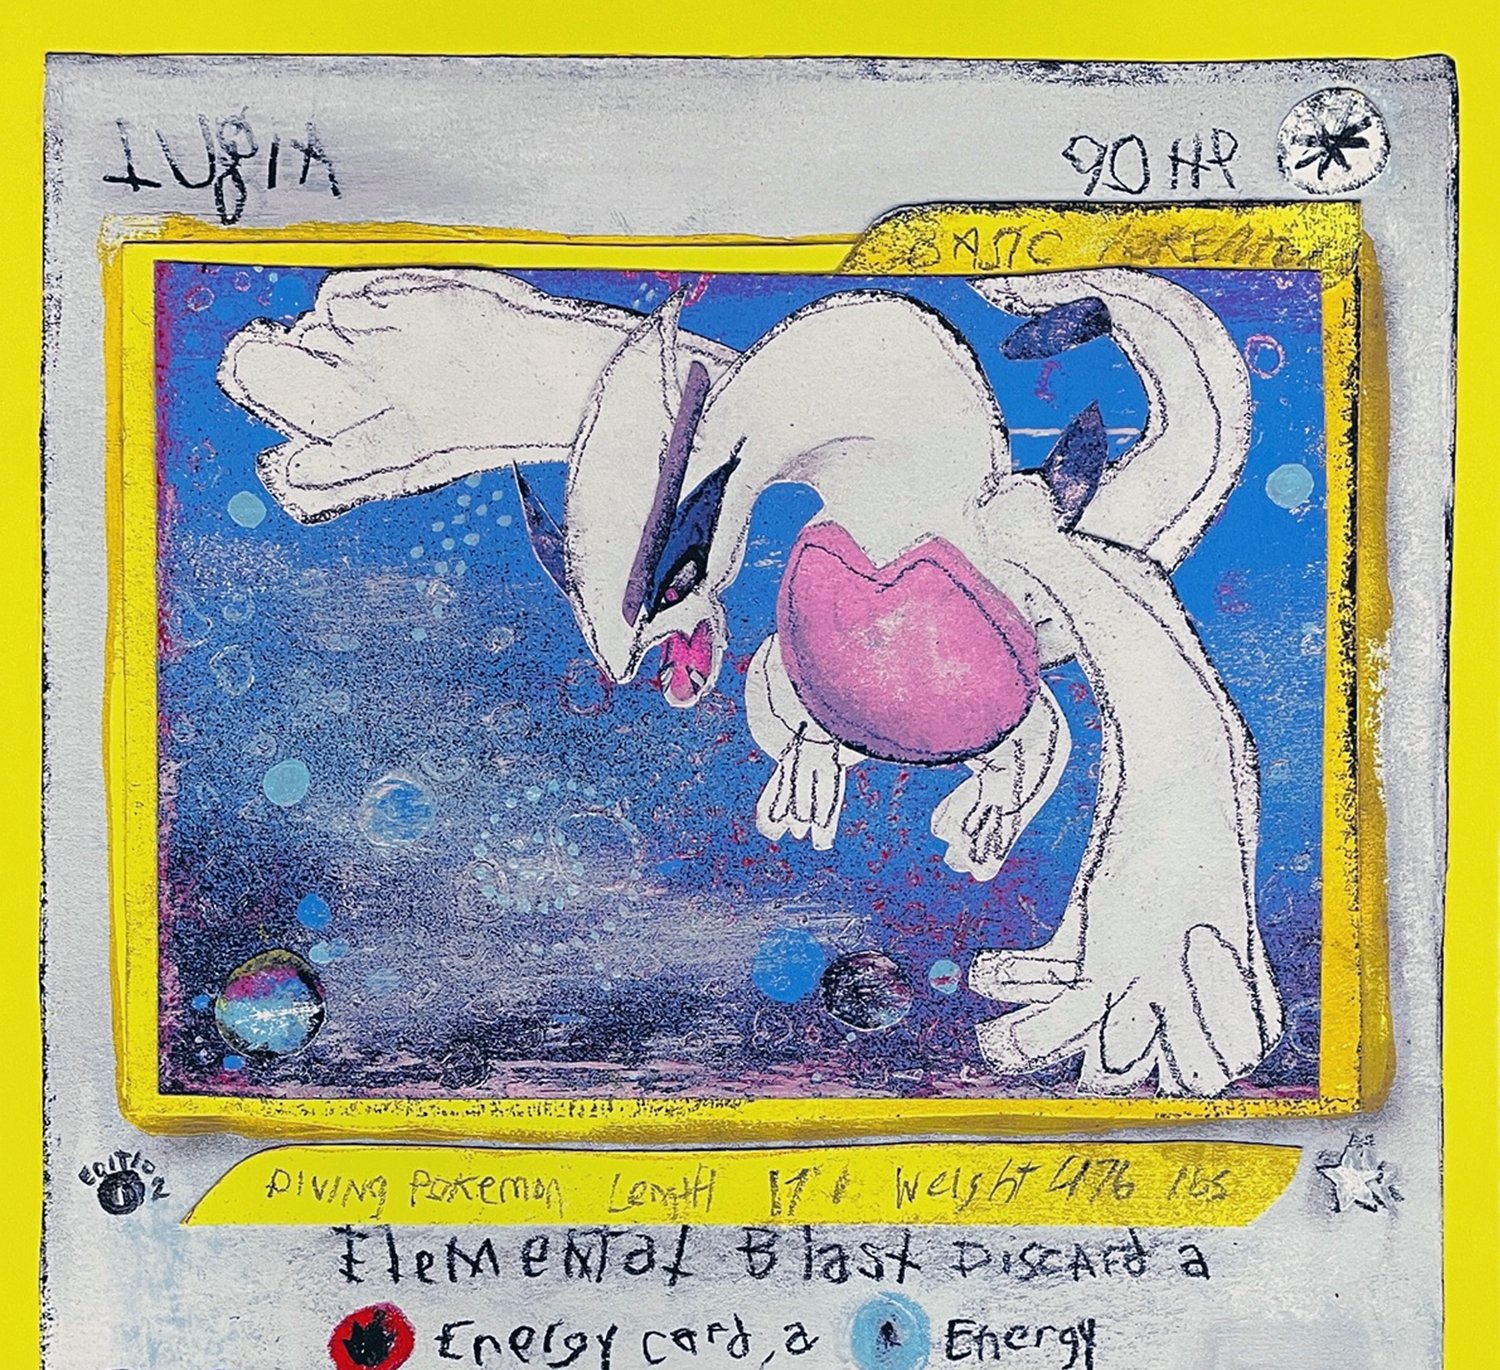 Pokémon 2000 Lugia & Kanto Trio A4 Printed Poster FINAL 